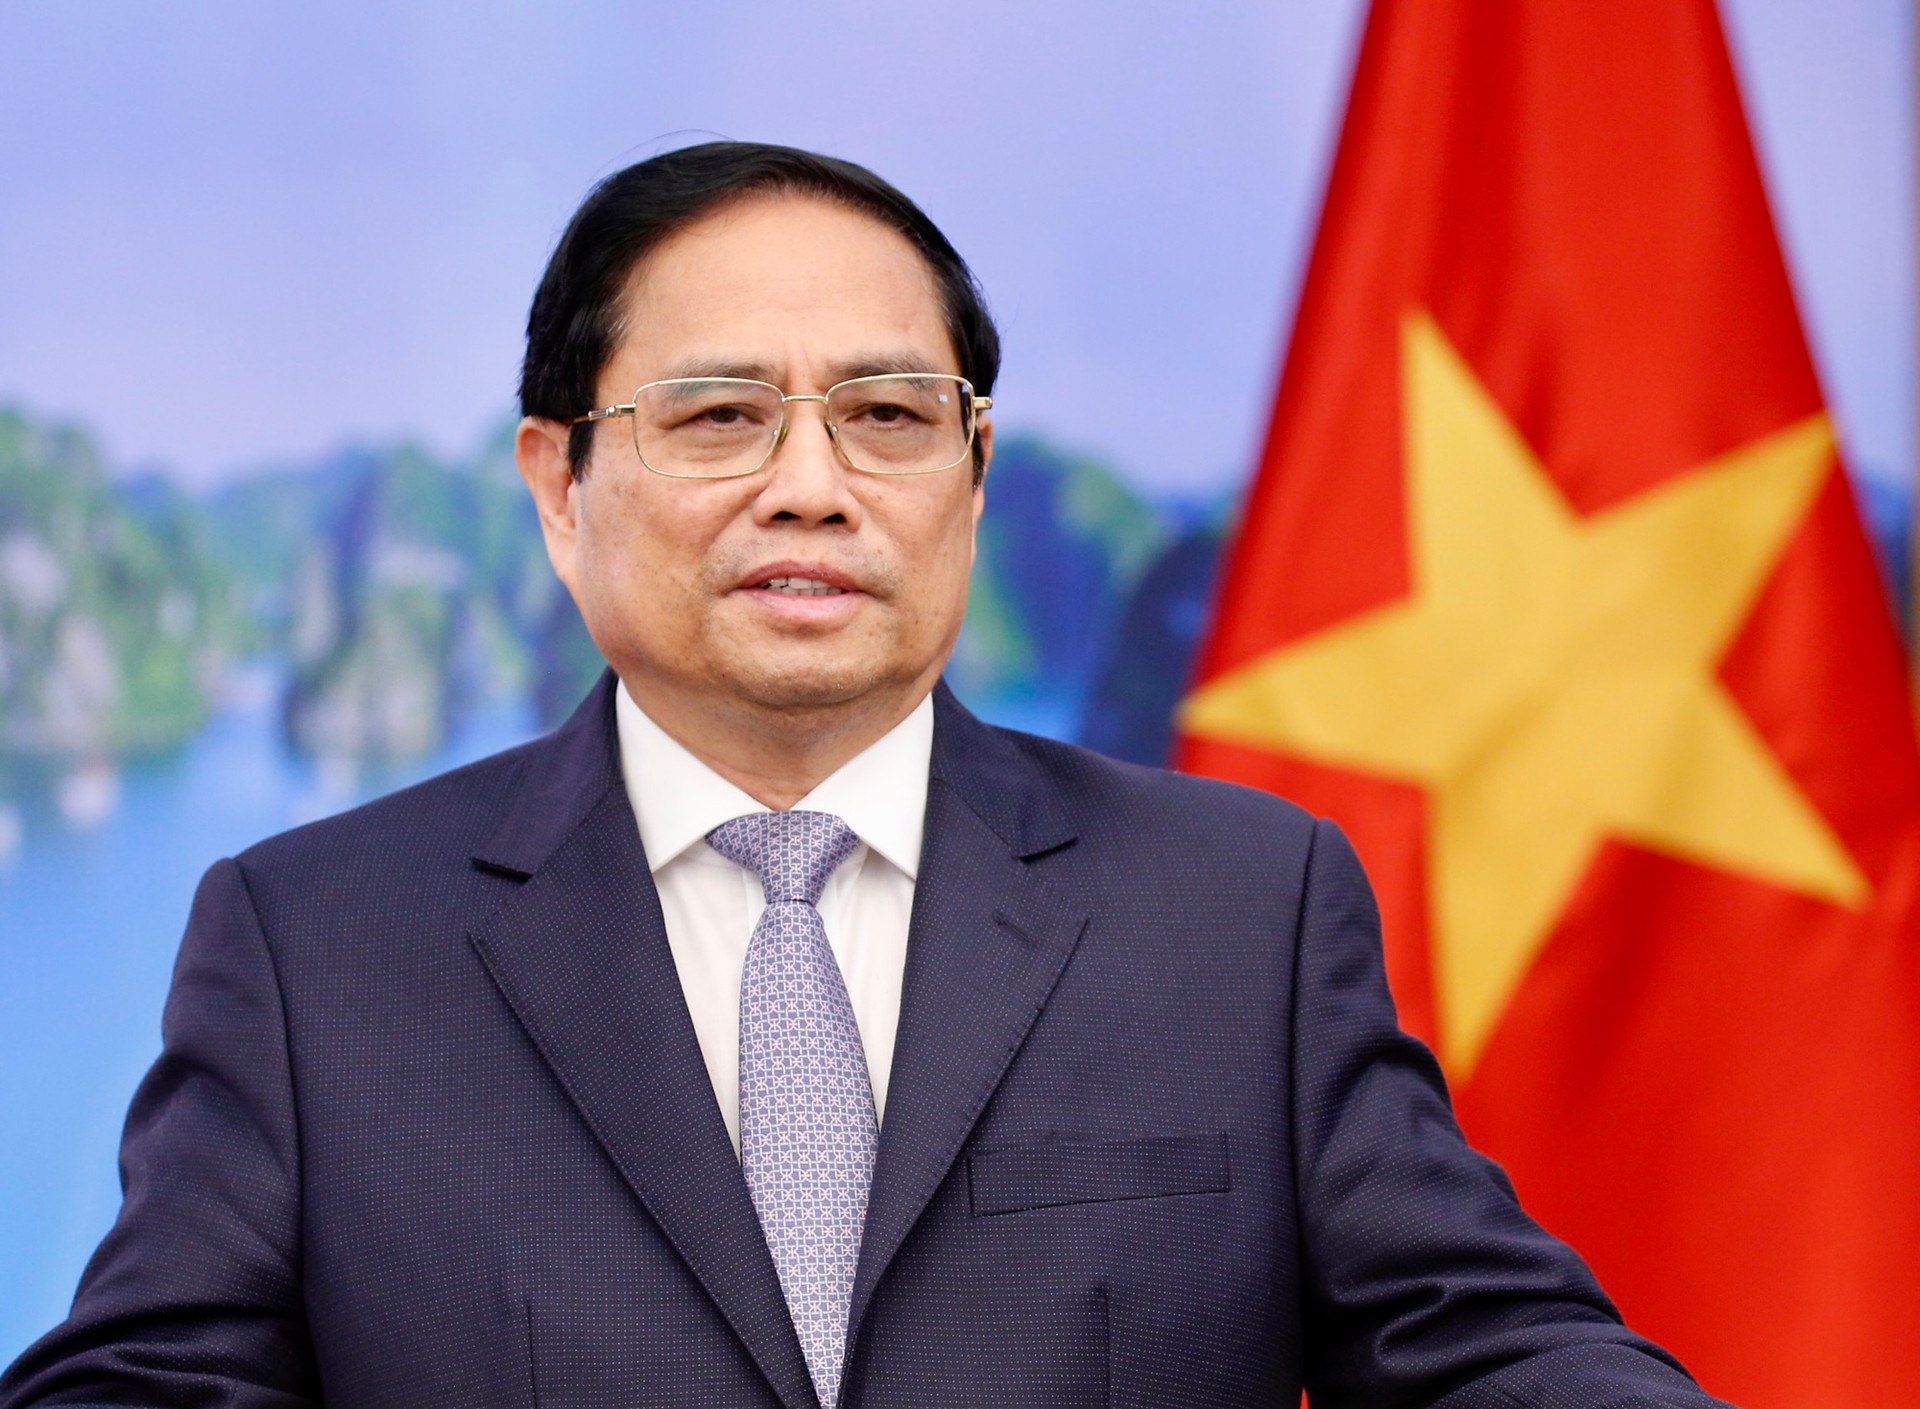 Thủ tướng: Việt Nam sẵn sàng tiếp tục đóng góp tích cực vào phục hồi kinh tế và phát triển bền vững ở châu Á - Thái Bình Dương - Ảnh 2.